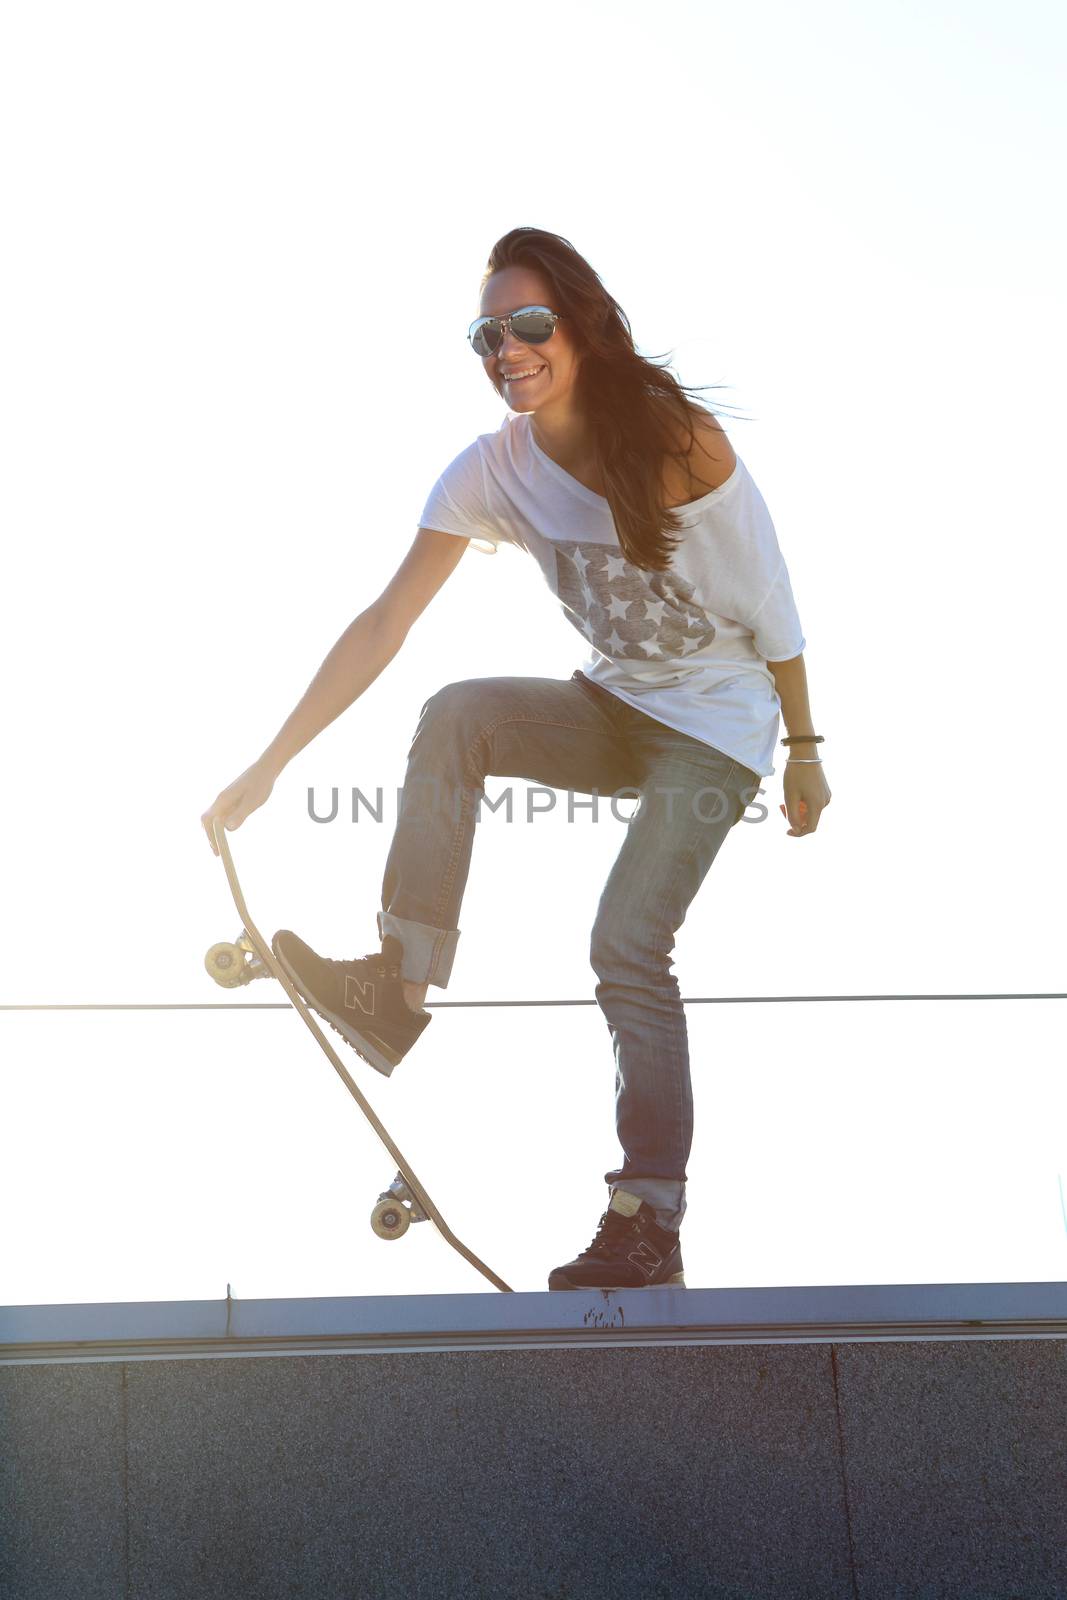 The girl on a skateboard by robert_przybysz